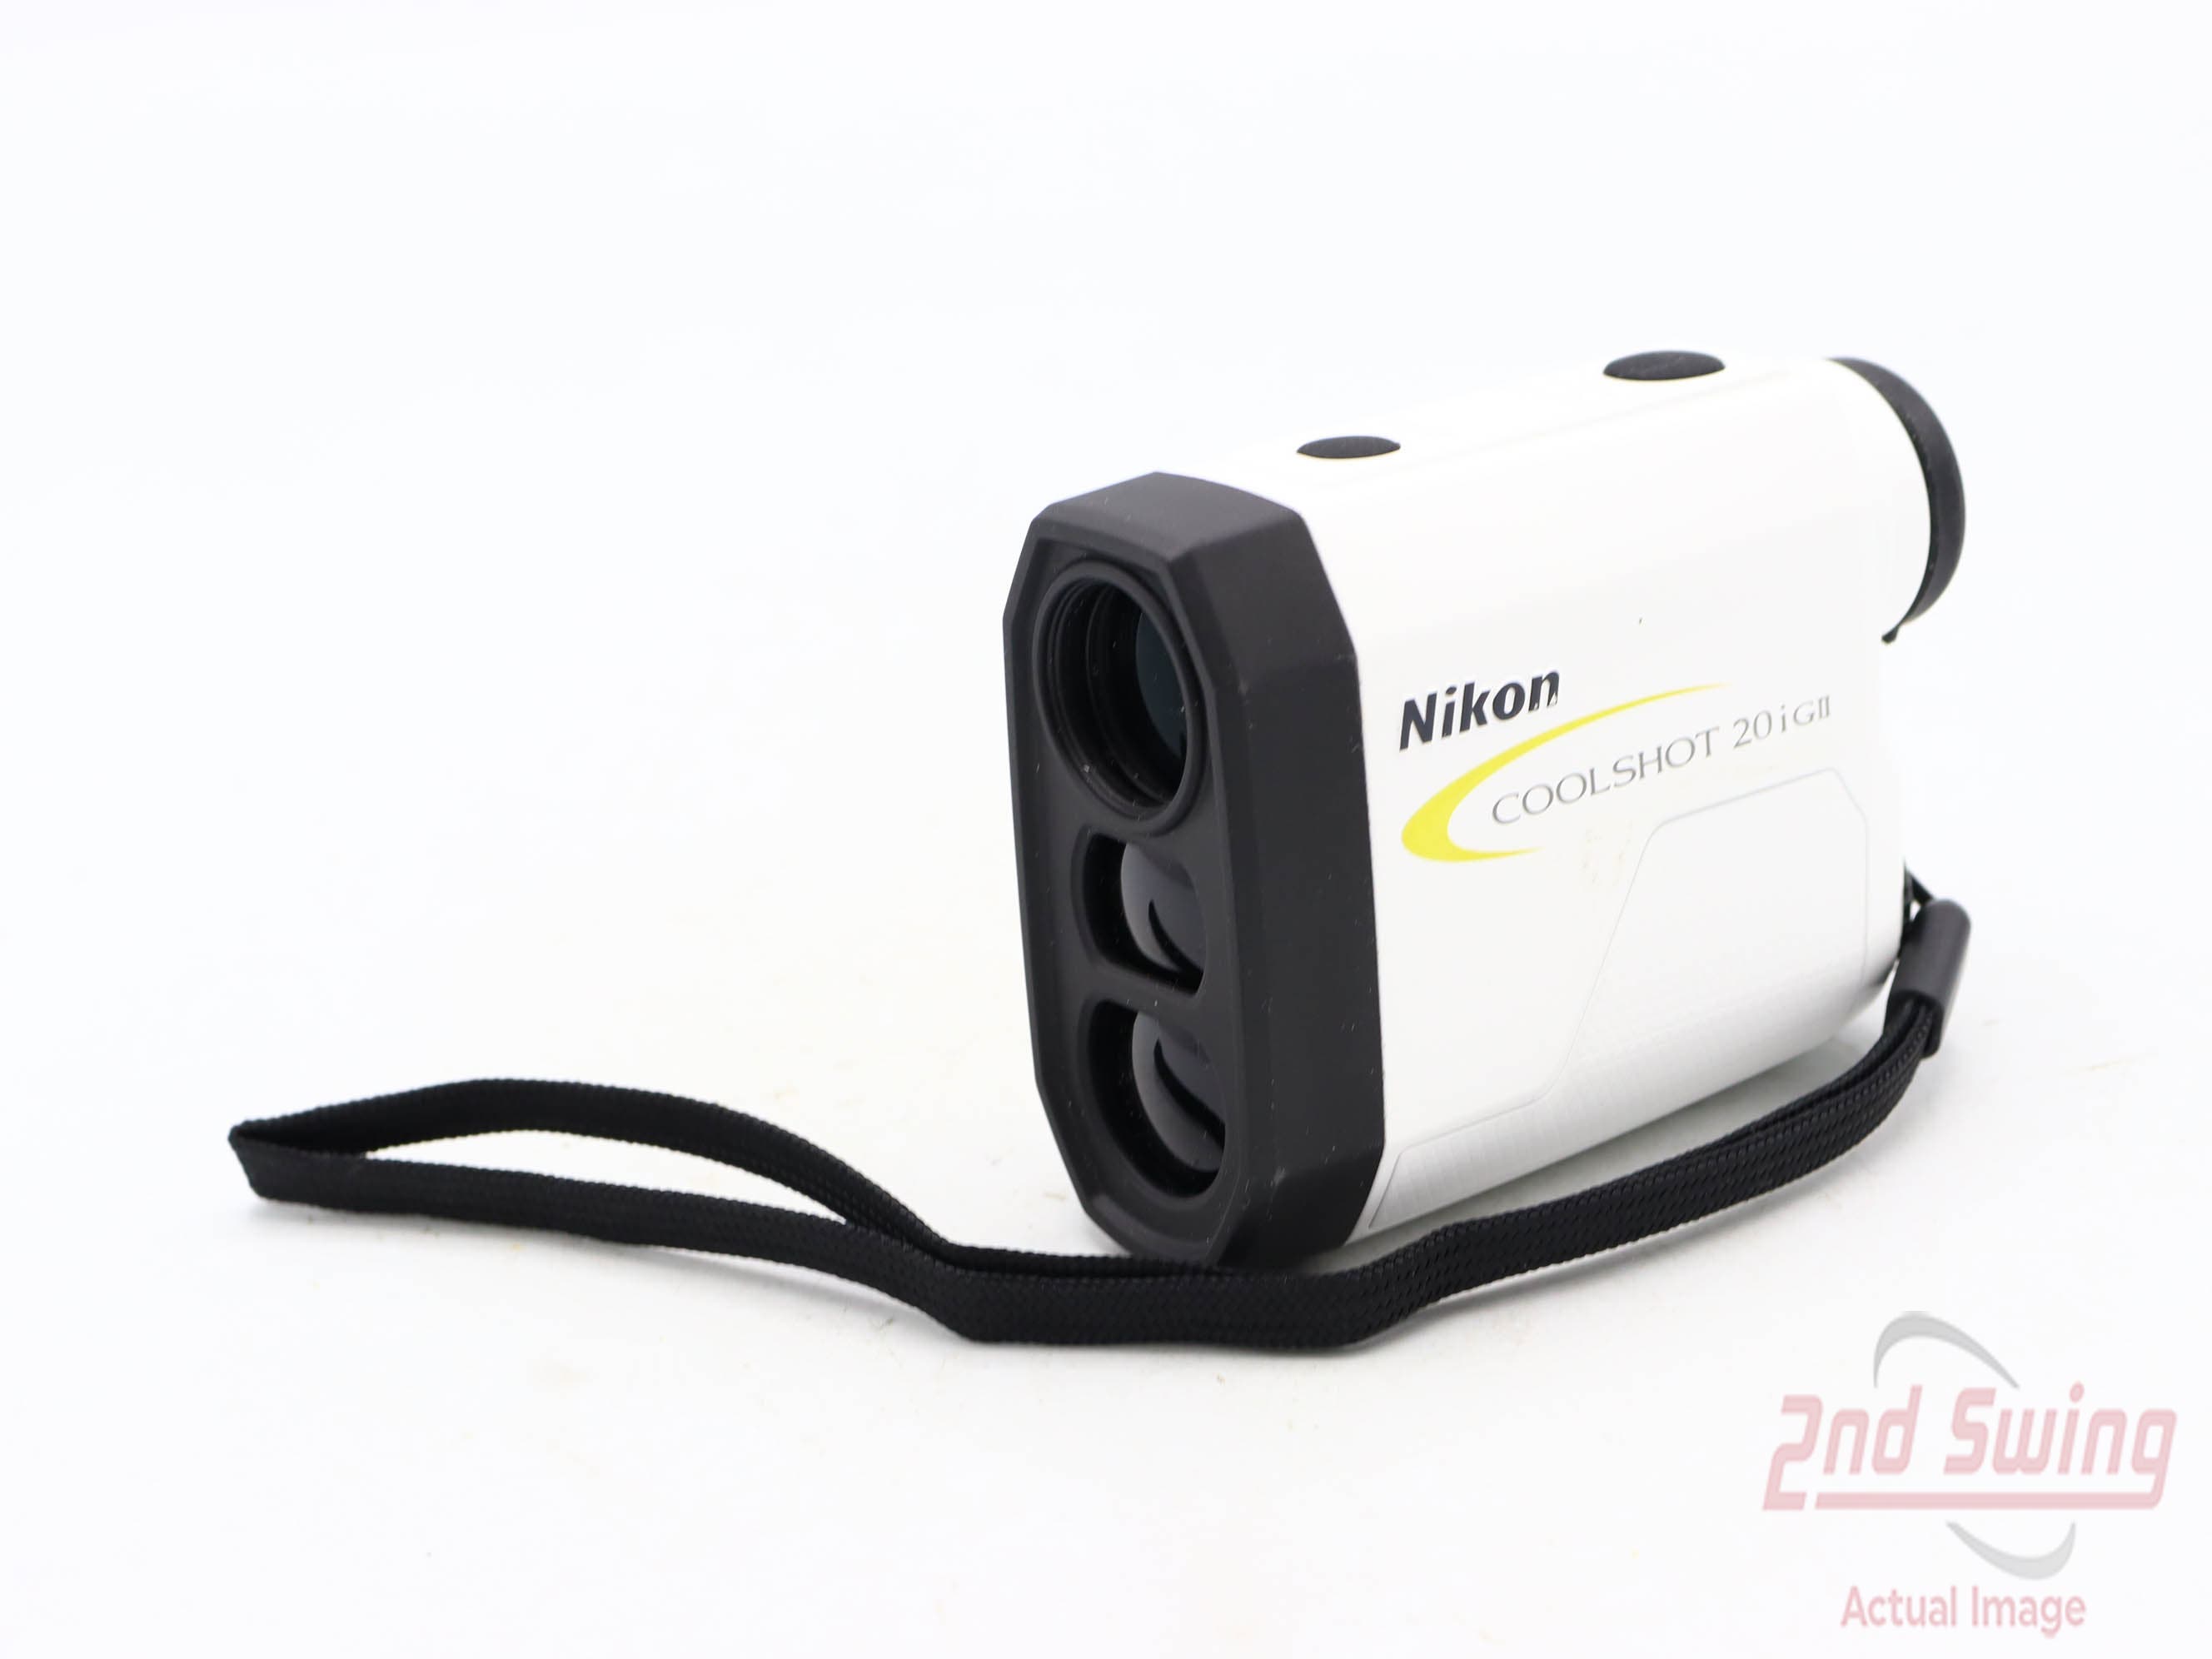 Nikon Coolshot 20i GII Golf GPS & Rangefinders (D-92333717515)